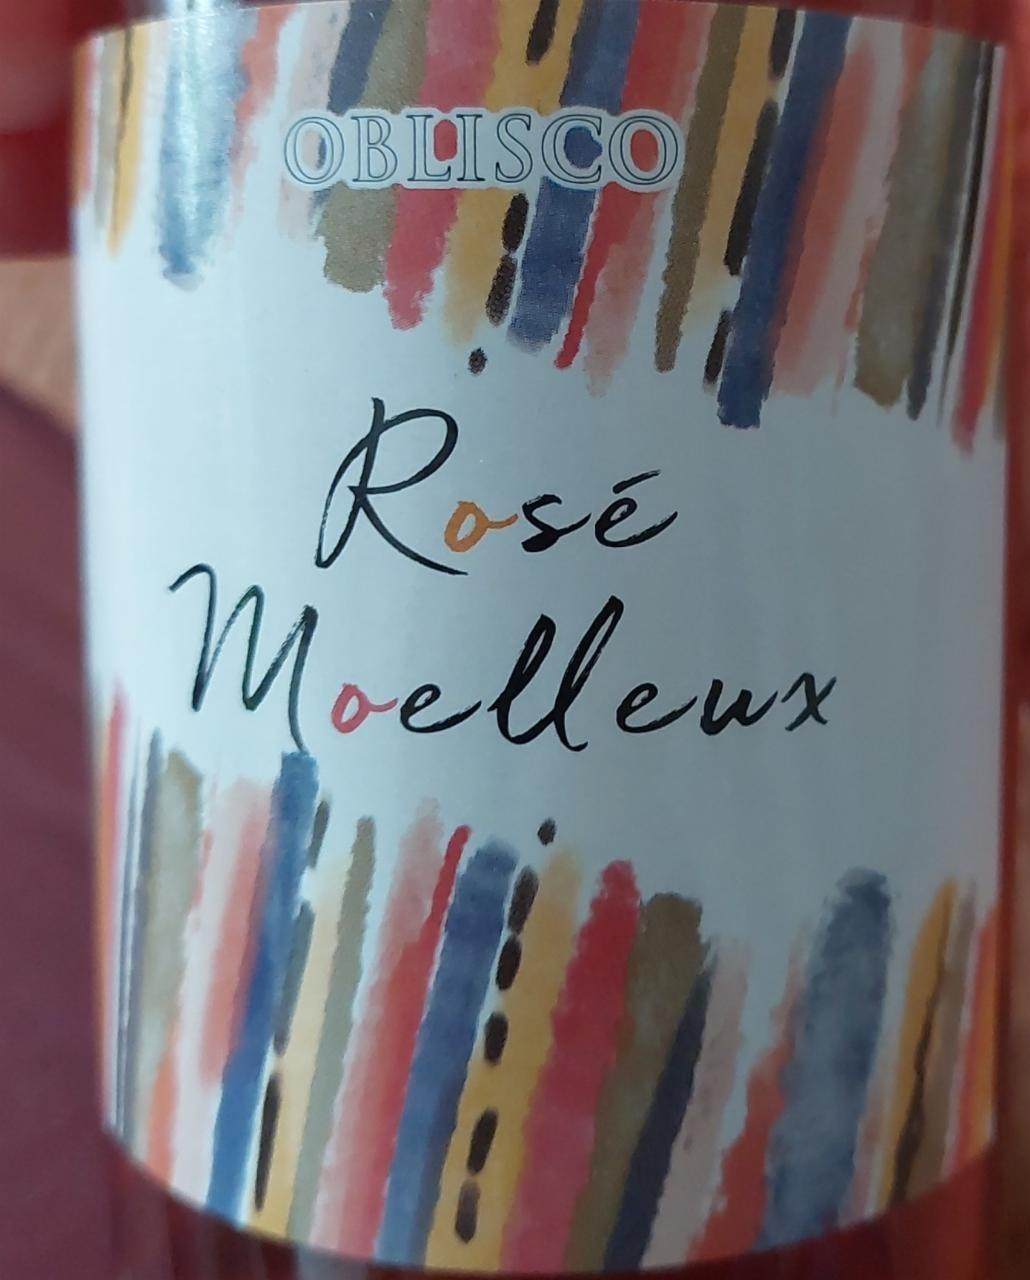 Fotografie - Oblisco Rosé moulleux